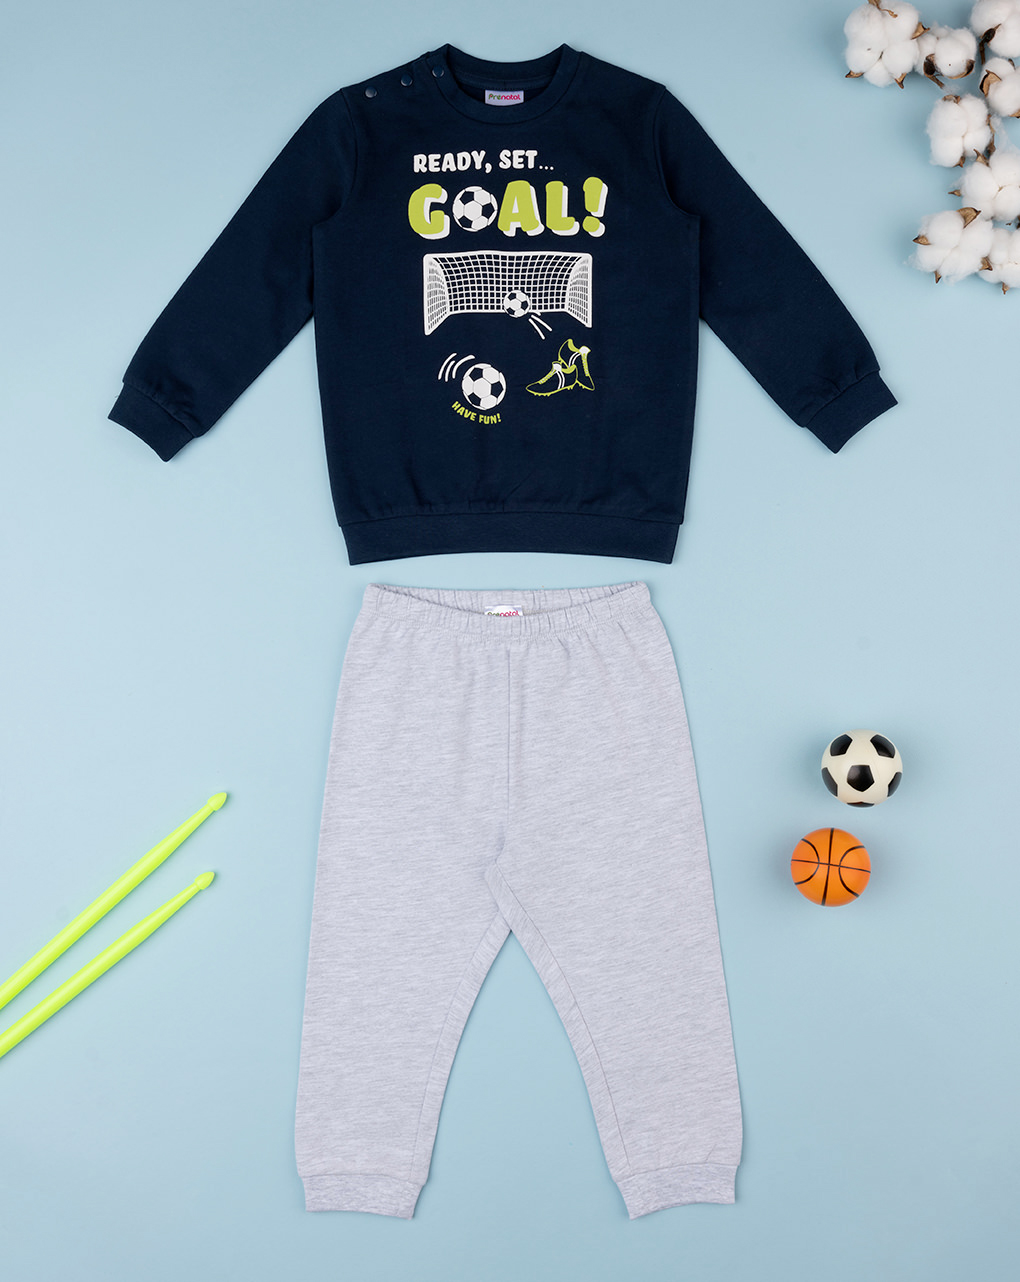 βρεφική πιτζάμα μπλε/γκρι goal για αγόρι